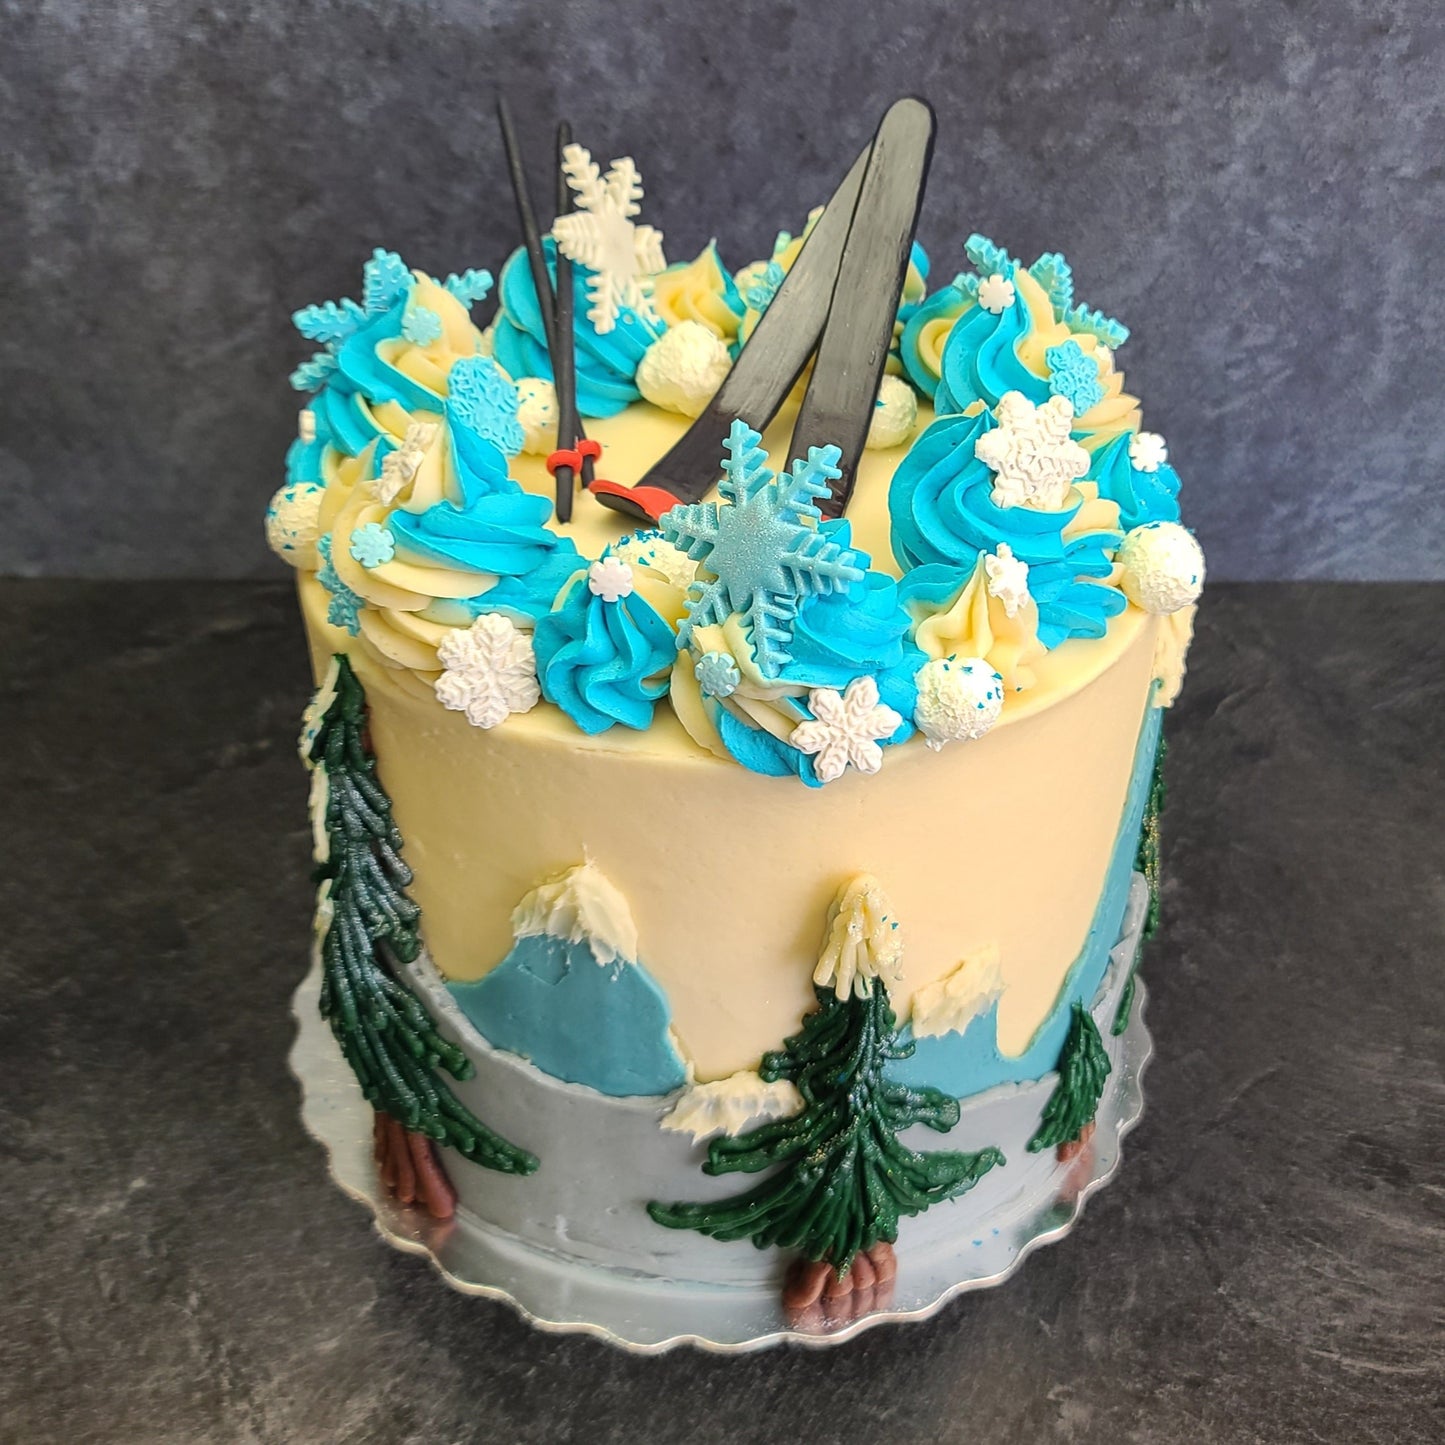 The Ski Lover's Cake